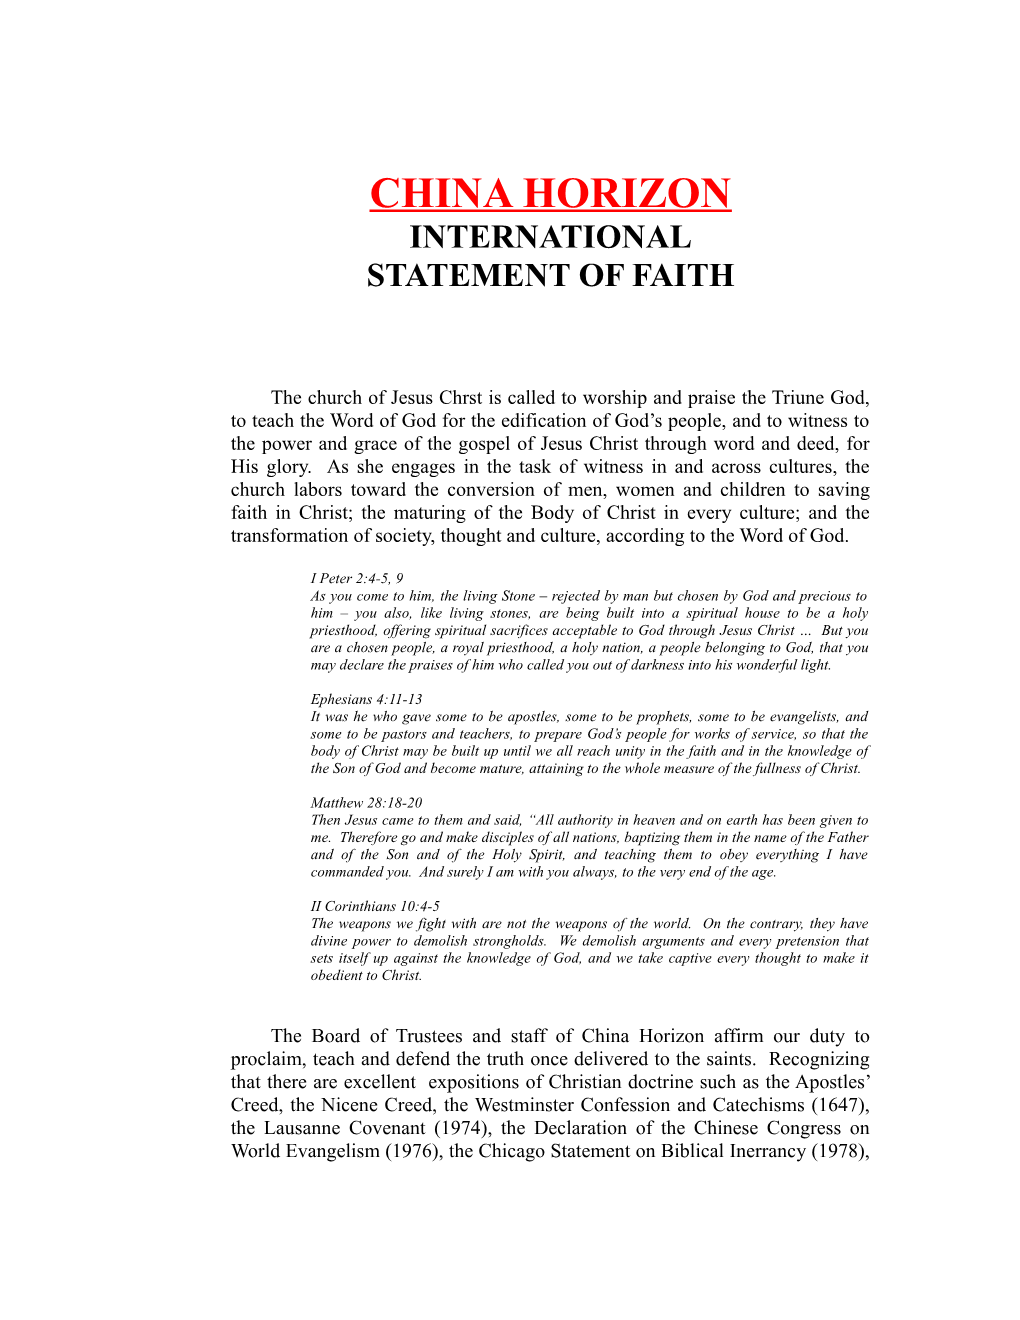 China Horizon International